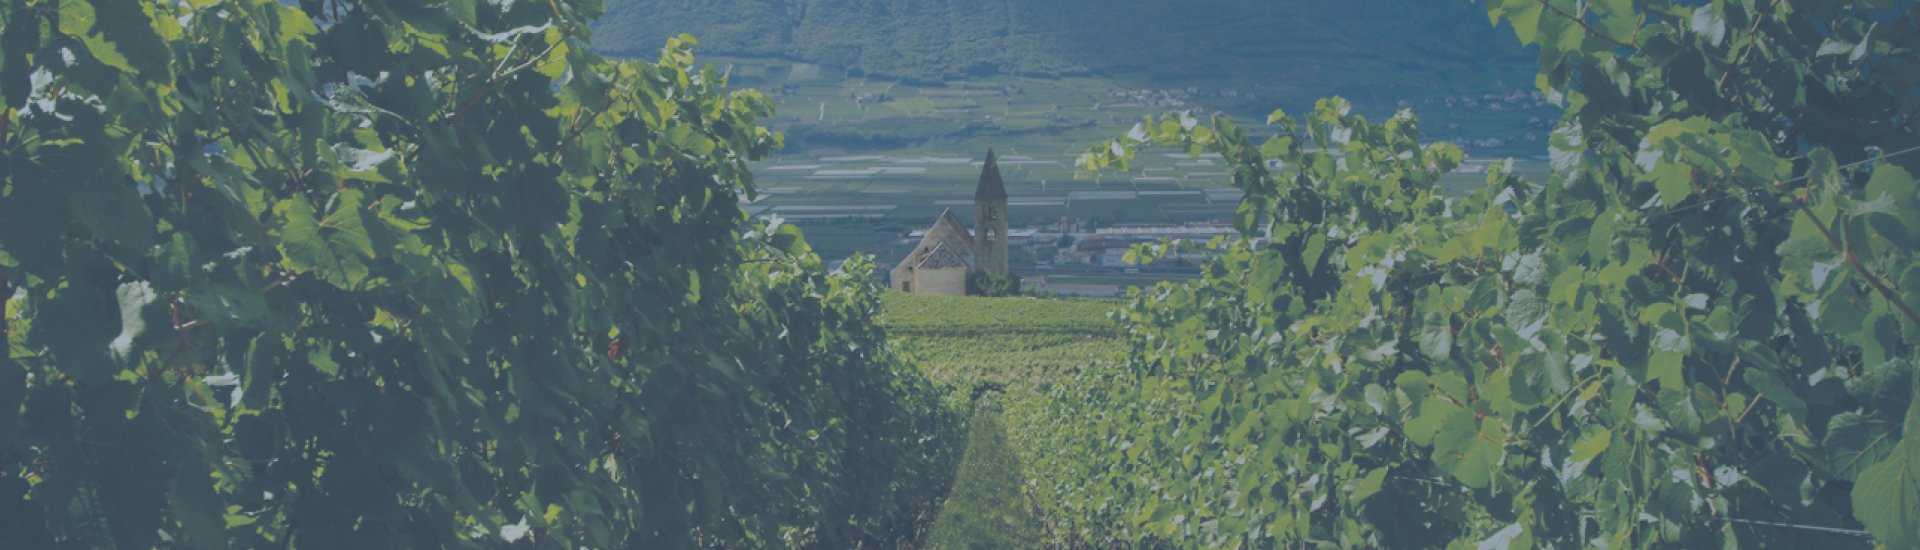 Weine - Vinorama on Tour: Unsere neuen Weingüter 06/2022 - Slider